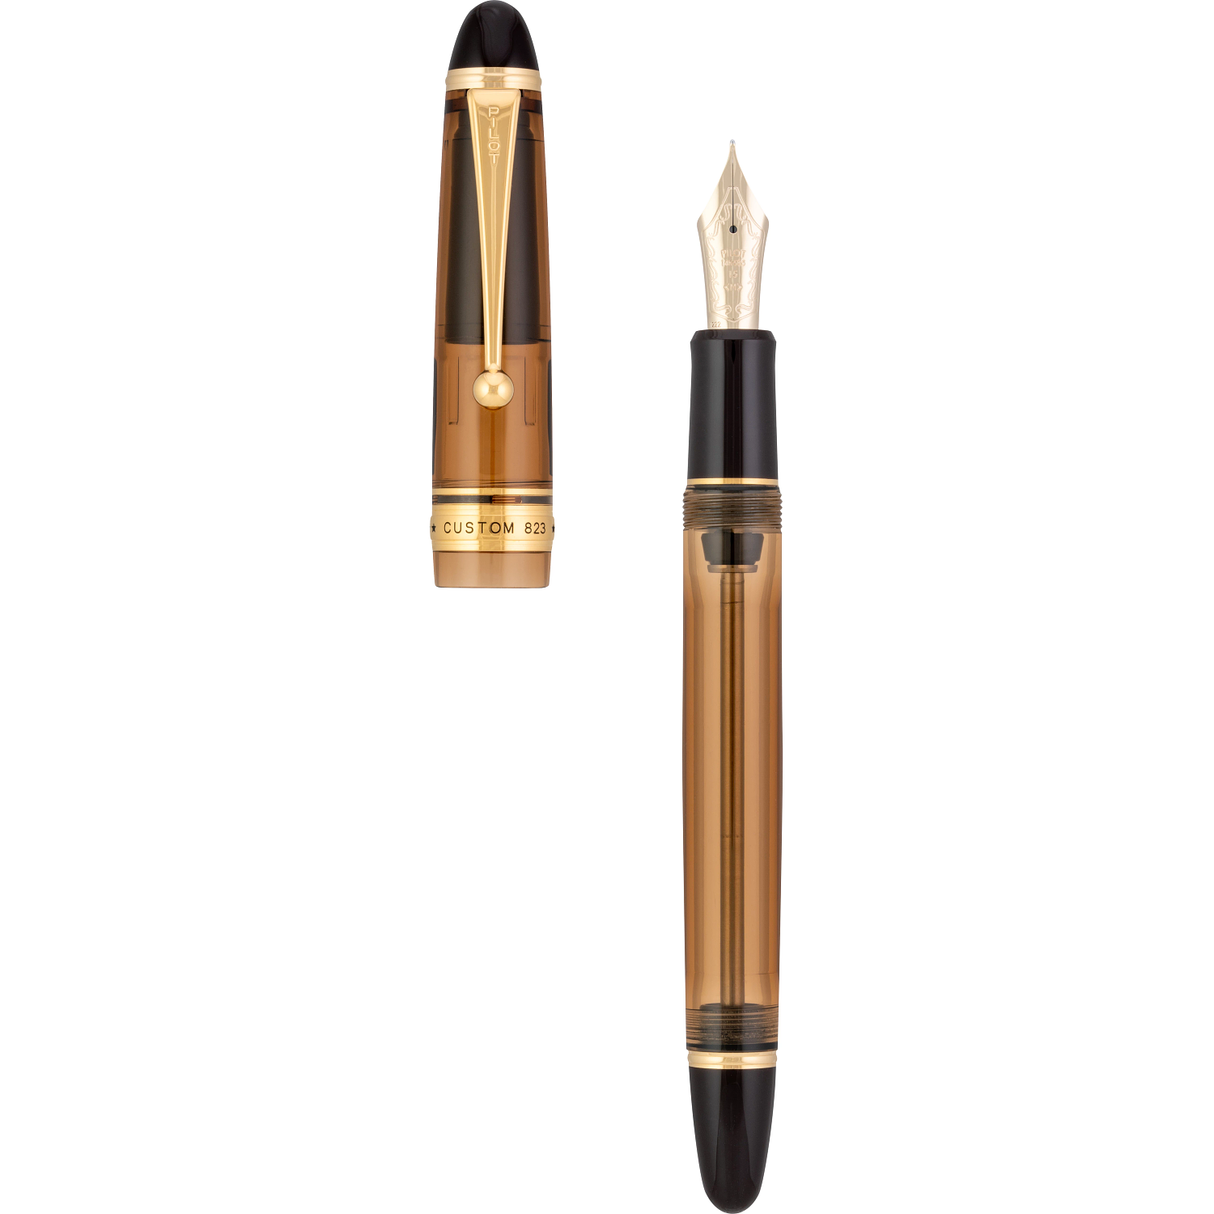 Pilot & Namiki Custom 823 Amber Fountain Pen - Uncapped